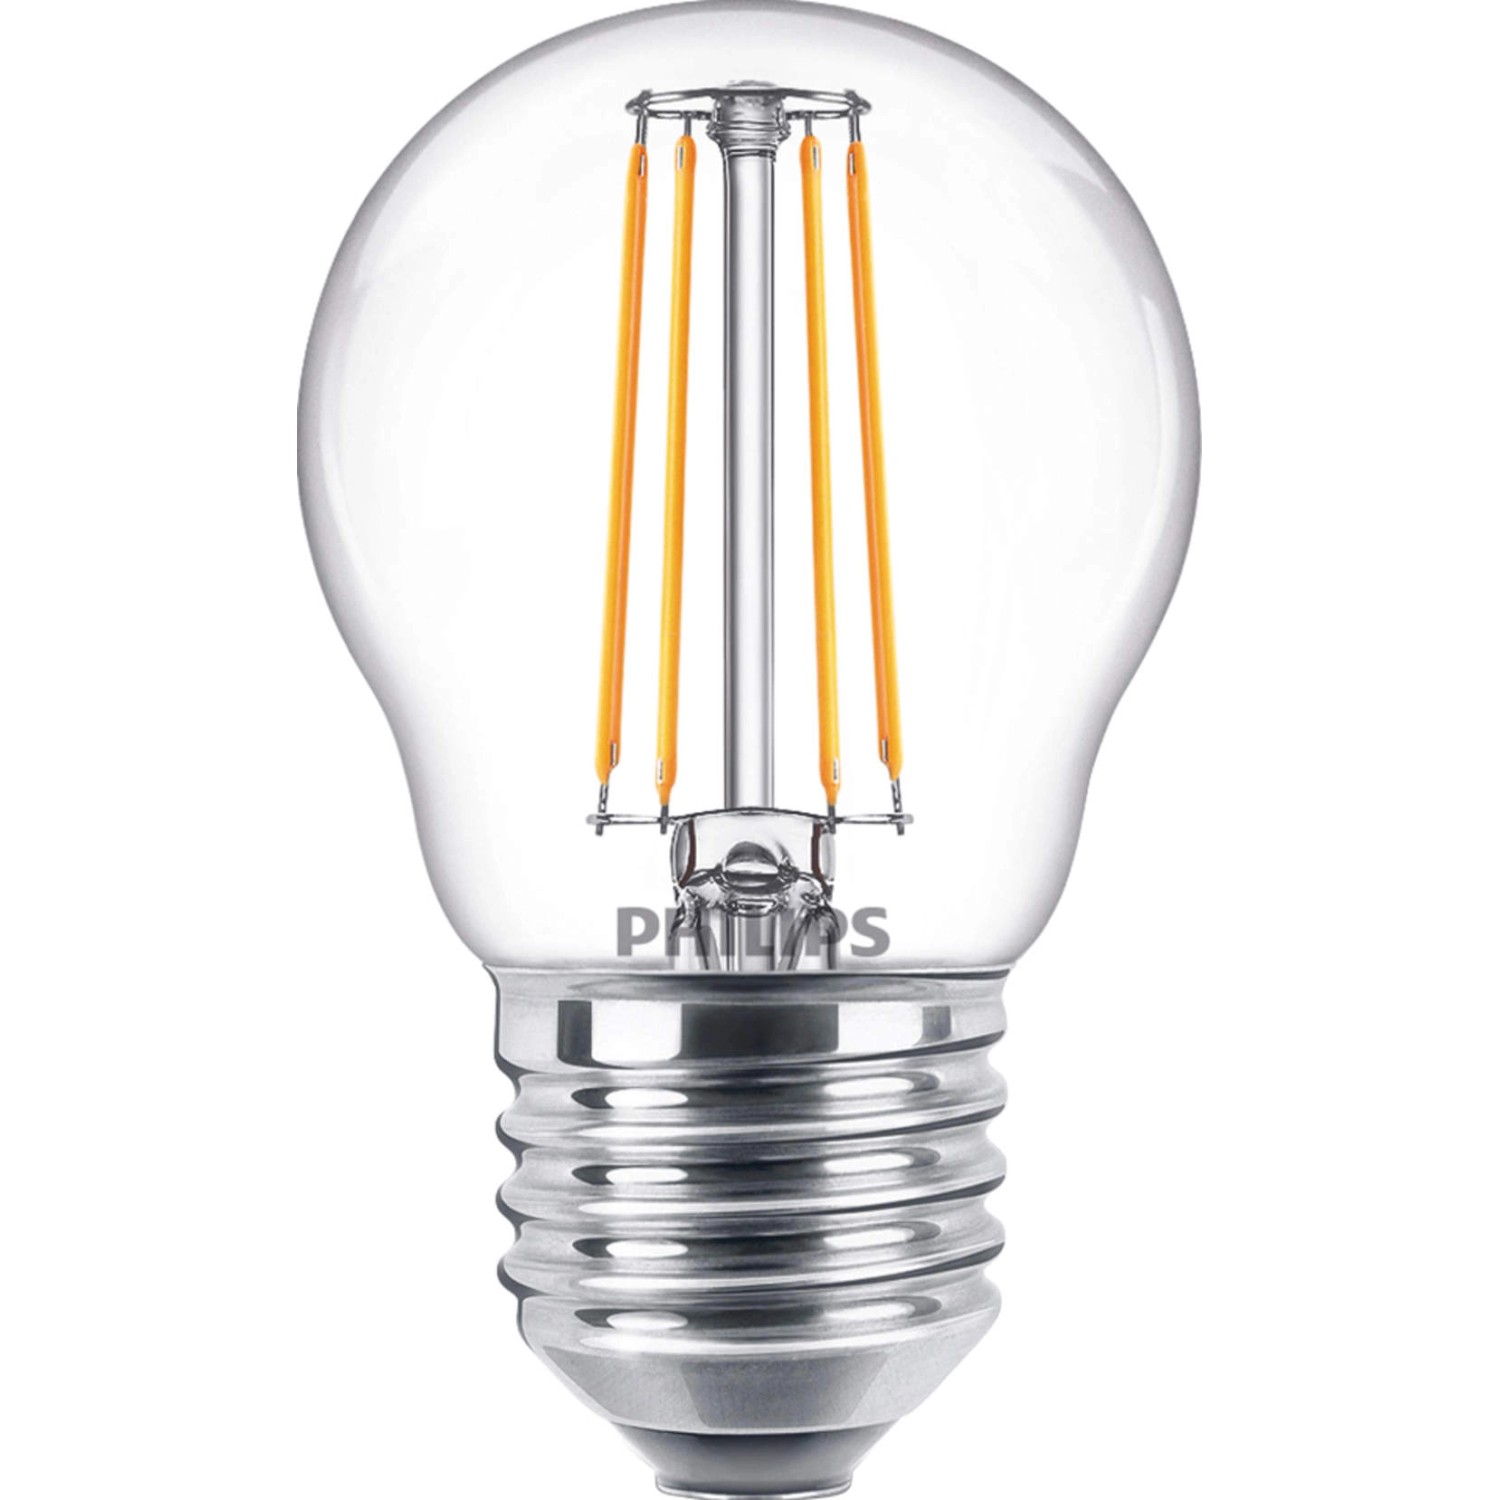 Philips LED-Leuchtmittel E27 Tropfenform 4,3 W 470 lm 8 x 4,5 cm (H x Ø)